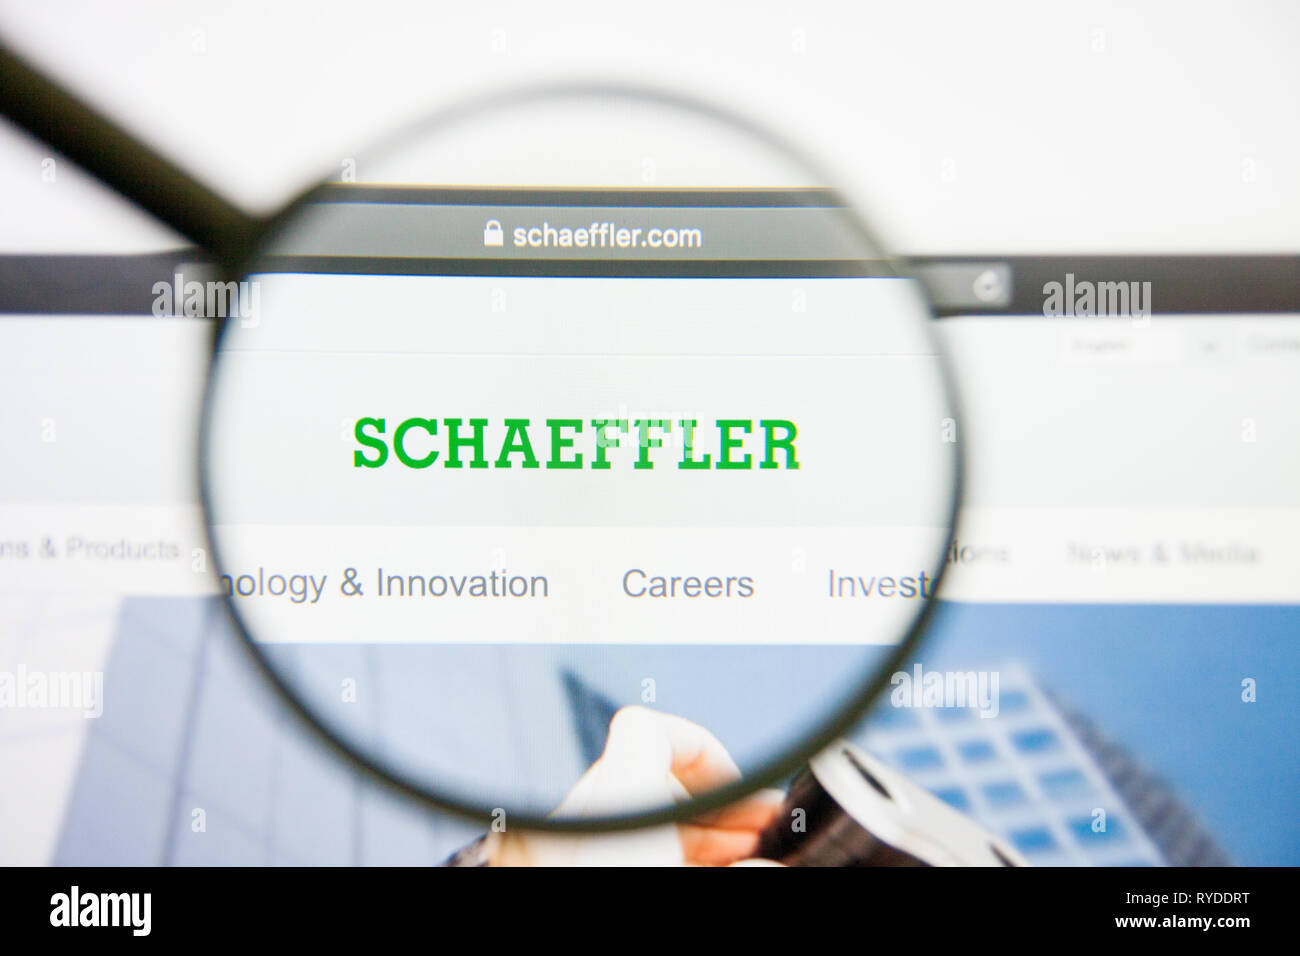 Los Angeles, Kalifornien, USA - 14. Februar 2019: Schaeffler Homepage. Schaeffler Logo auf dem Bildschirm sichtbar. Stockfoto